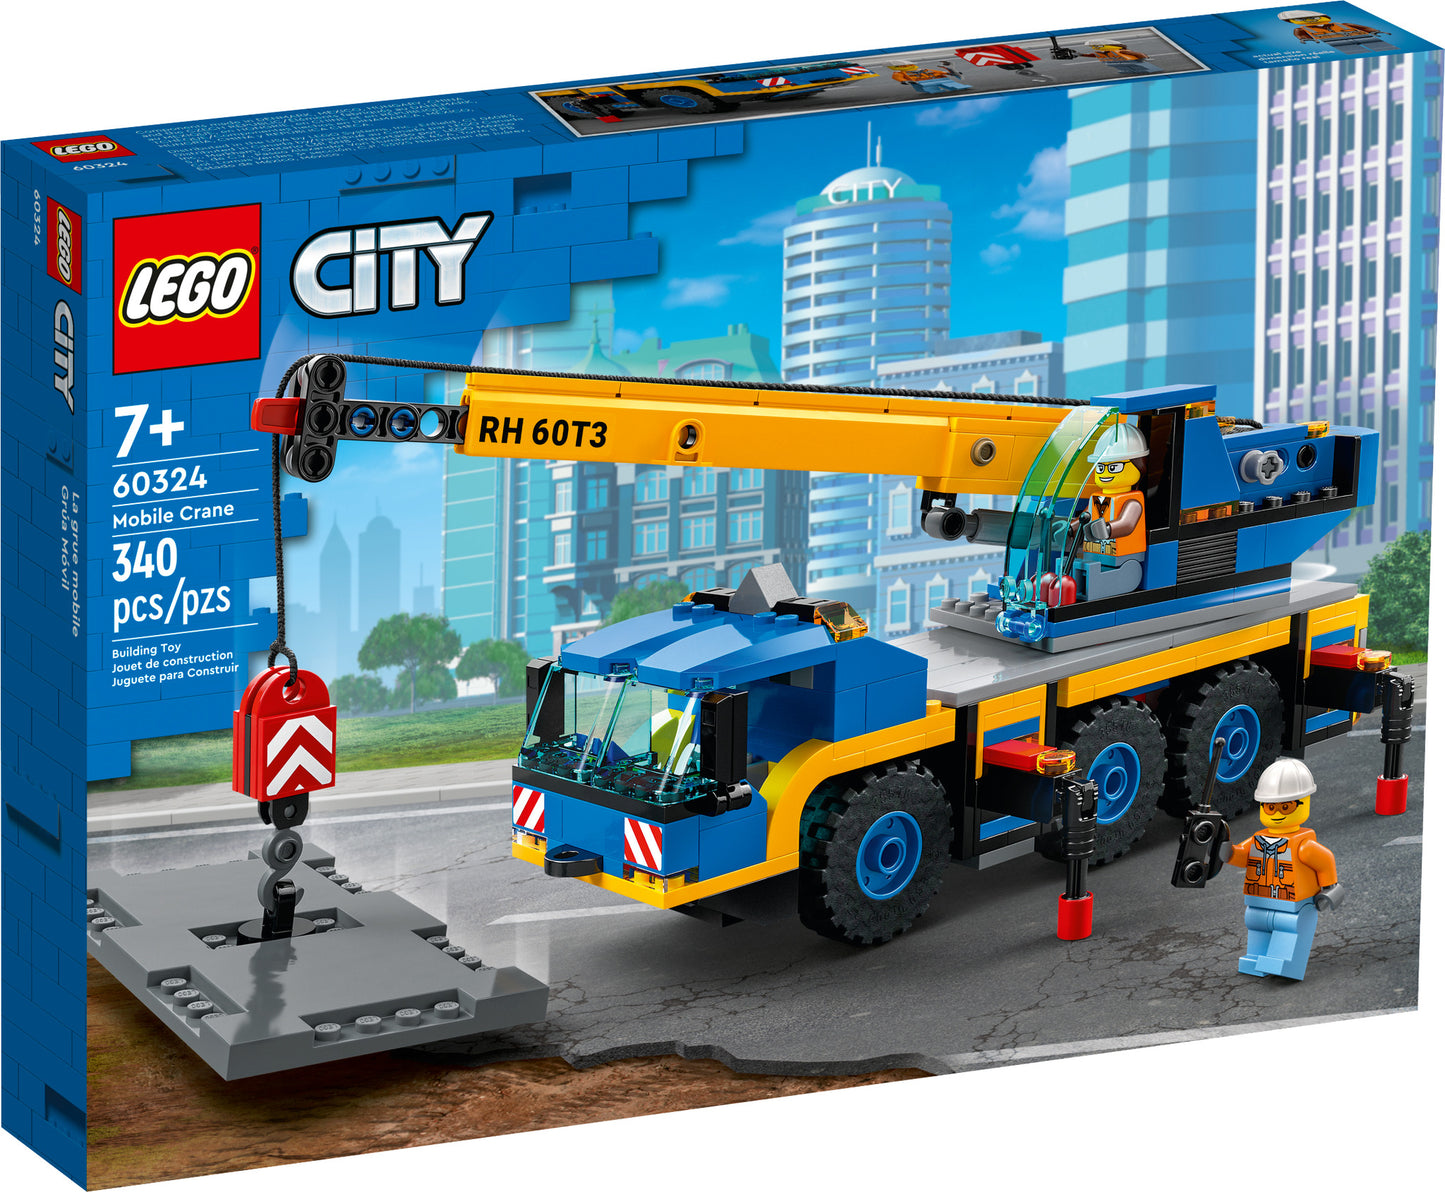 60324 LEGO City - Gru Mobile